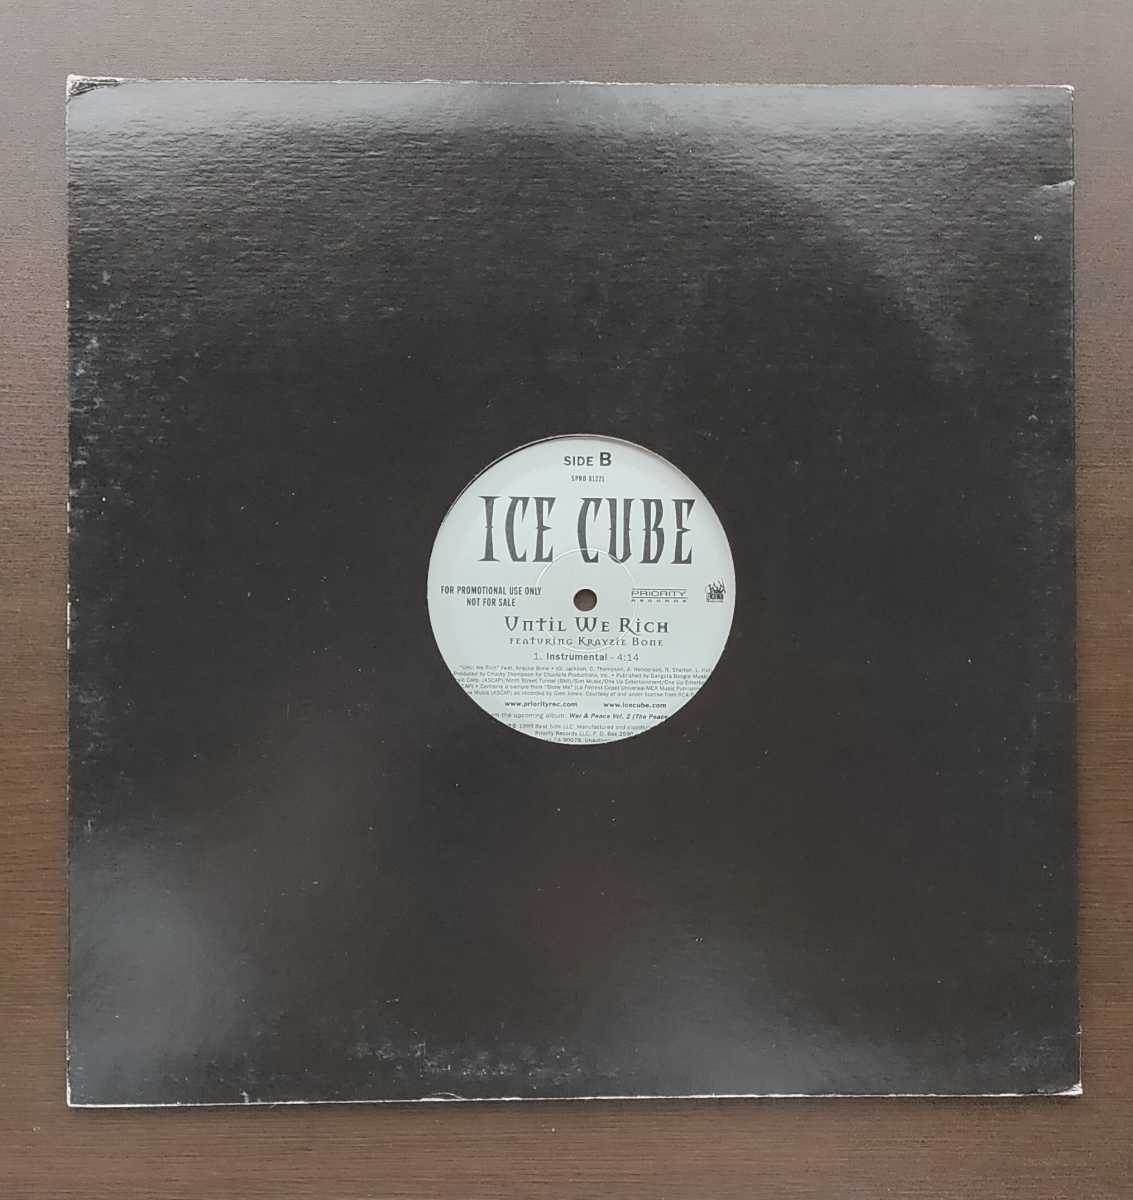 プロモ盤 81221 Ice CubeUntil Rich Featuring Krayzhe Bone We Rich 12インチレコードの画像2